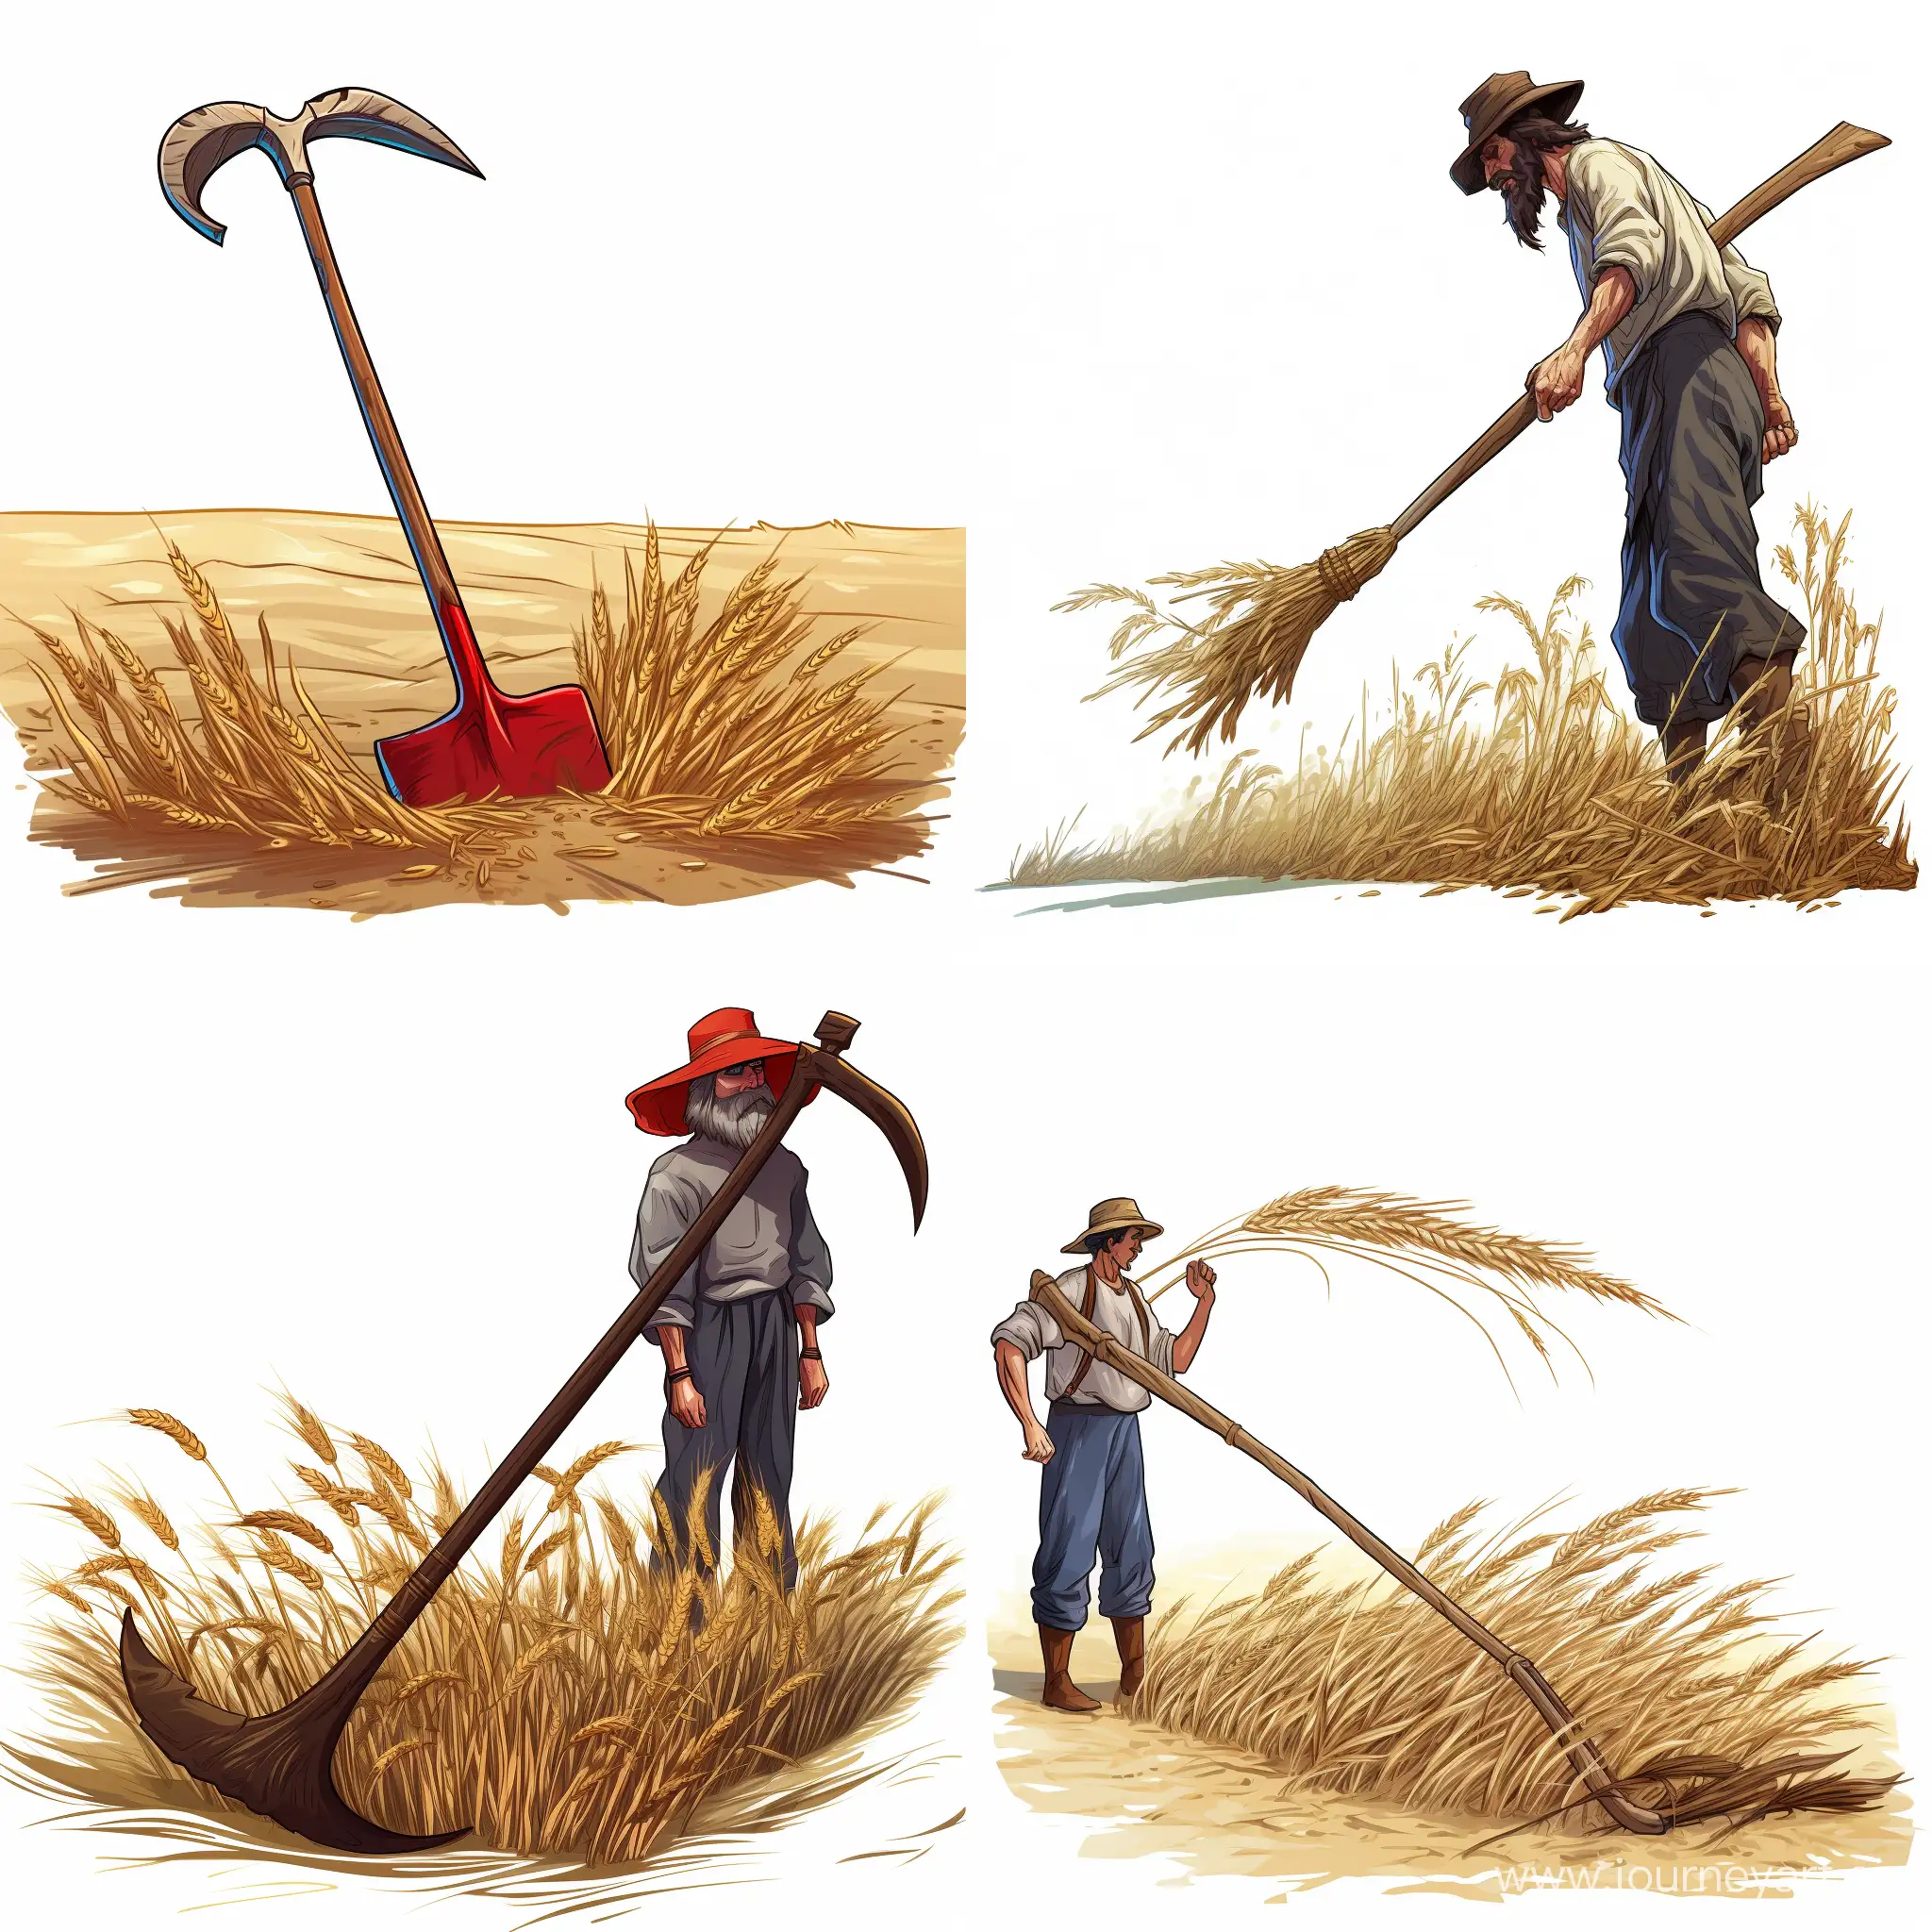 Cartoon-Scythe-for-Wheat-Harvesting-on-White-Background